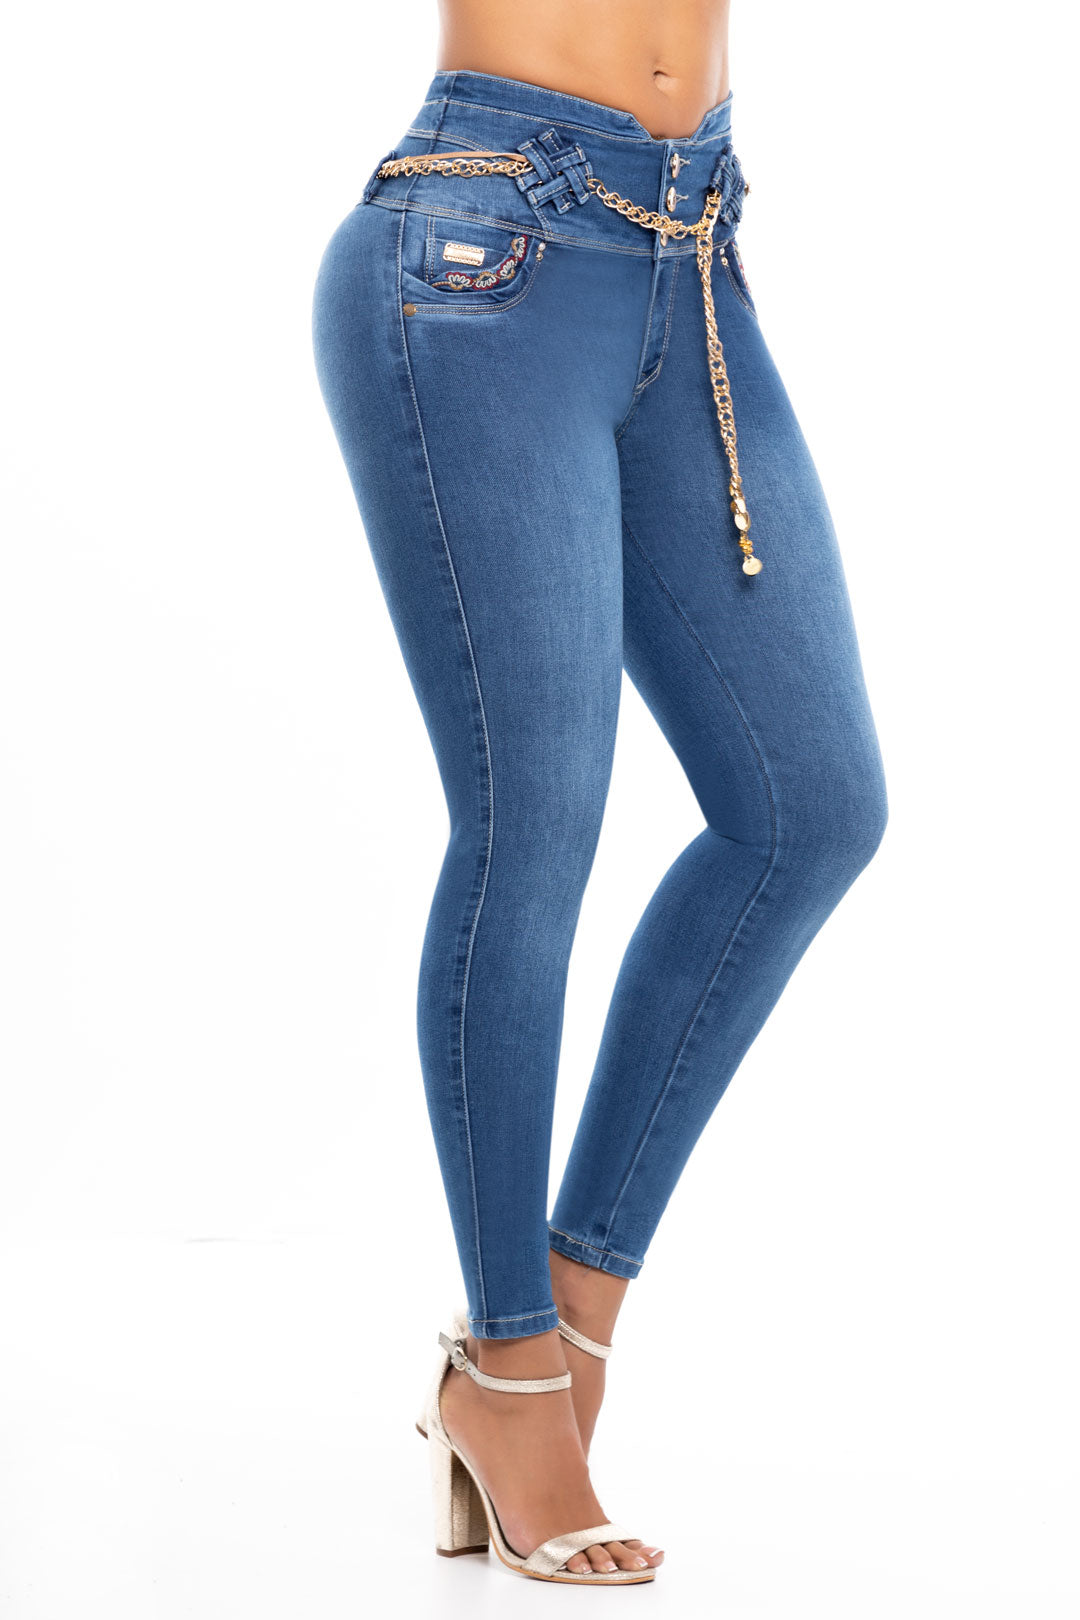 Jeans Push Up Carlos Prada 6223  Colombian Wear – Colombiana de jeans